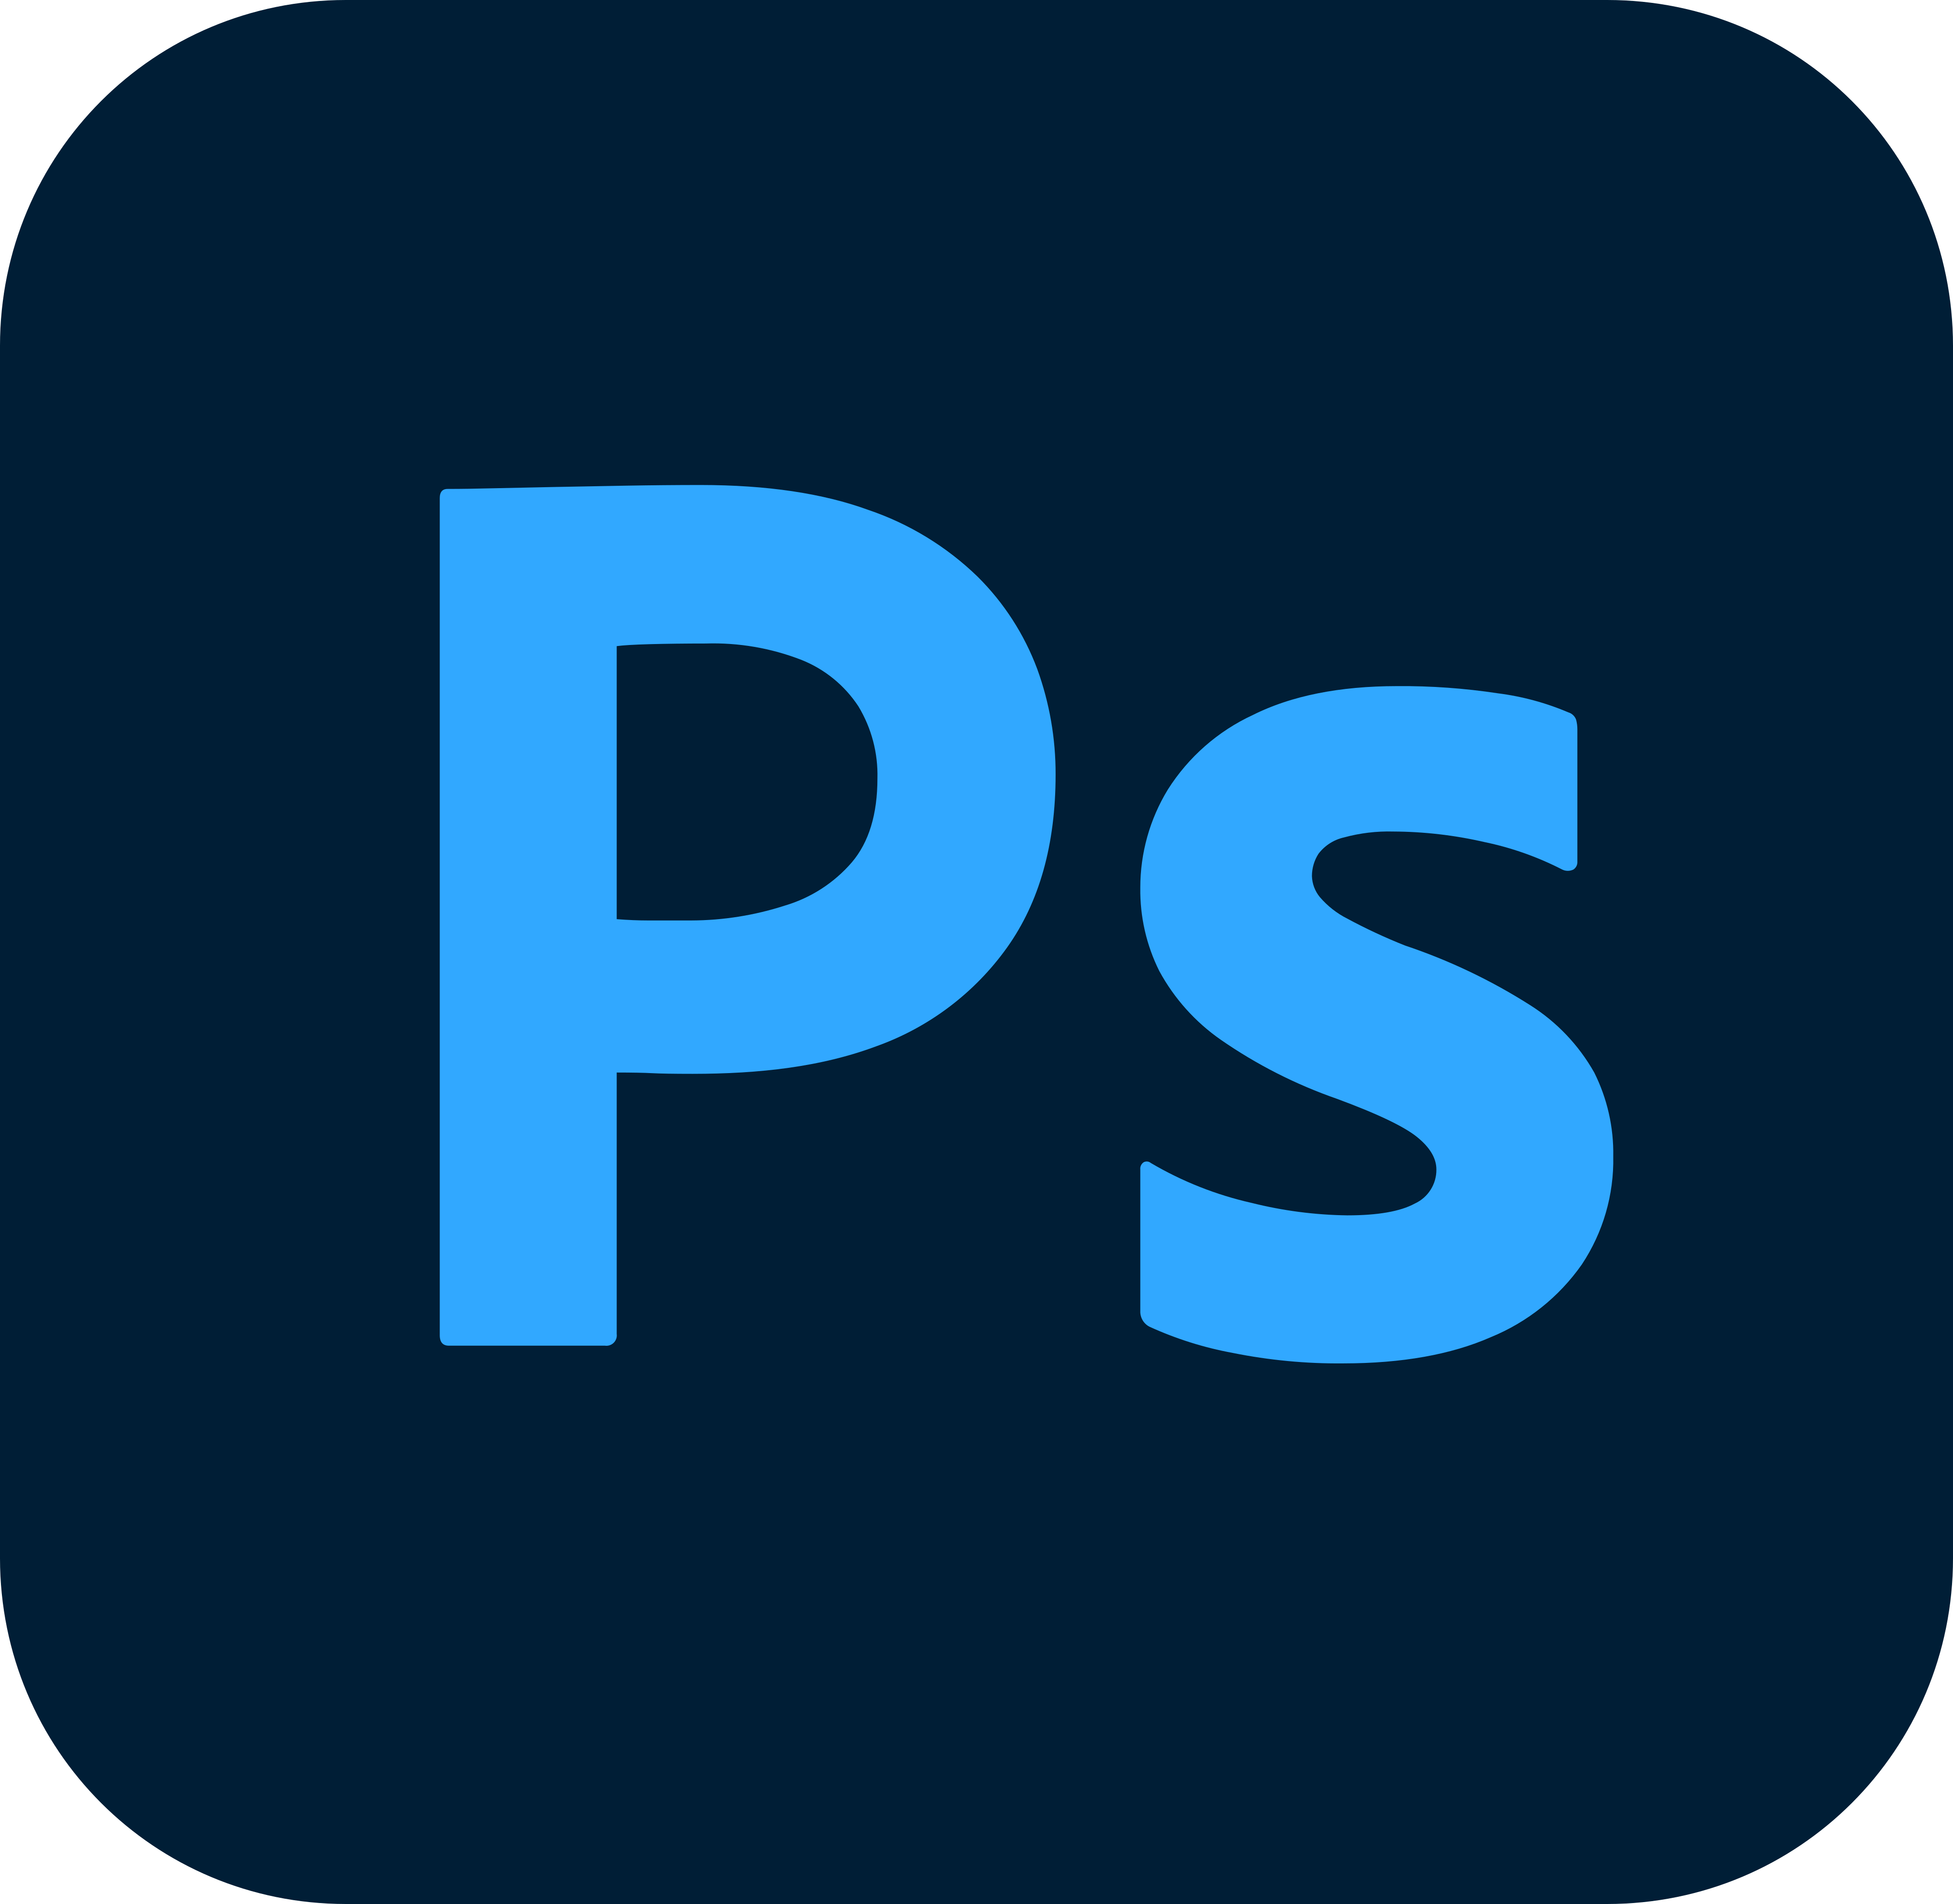 Adobe Photoshop Logo.